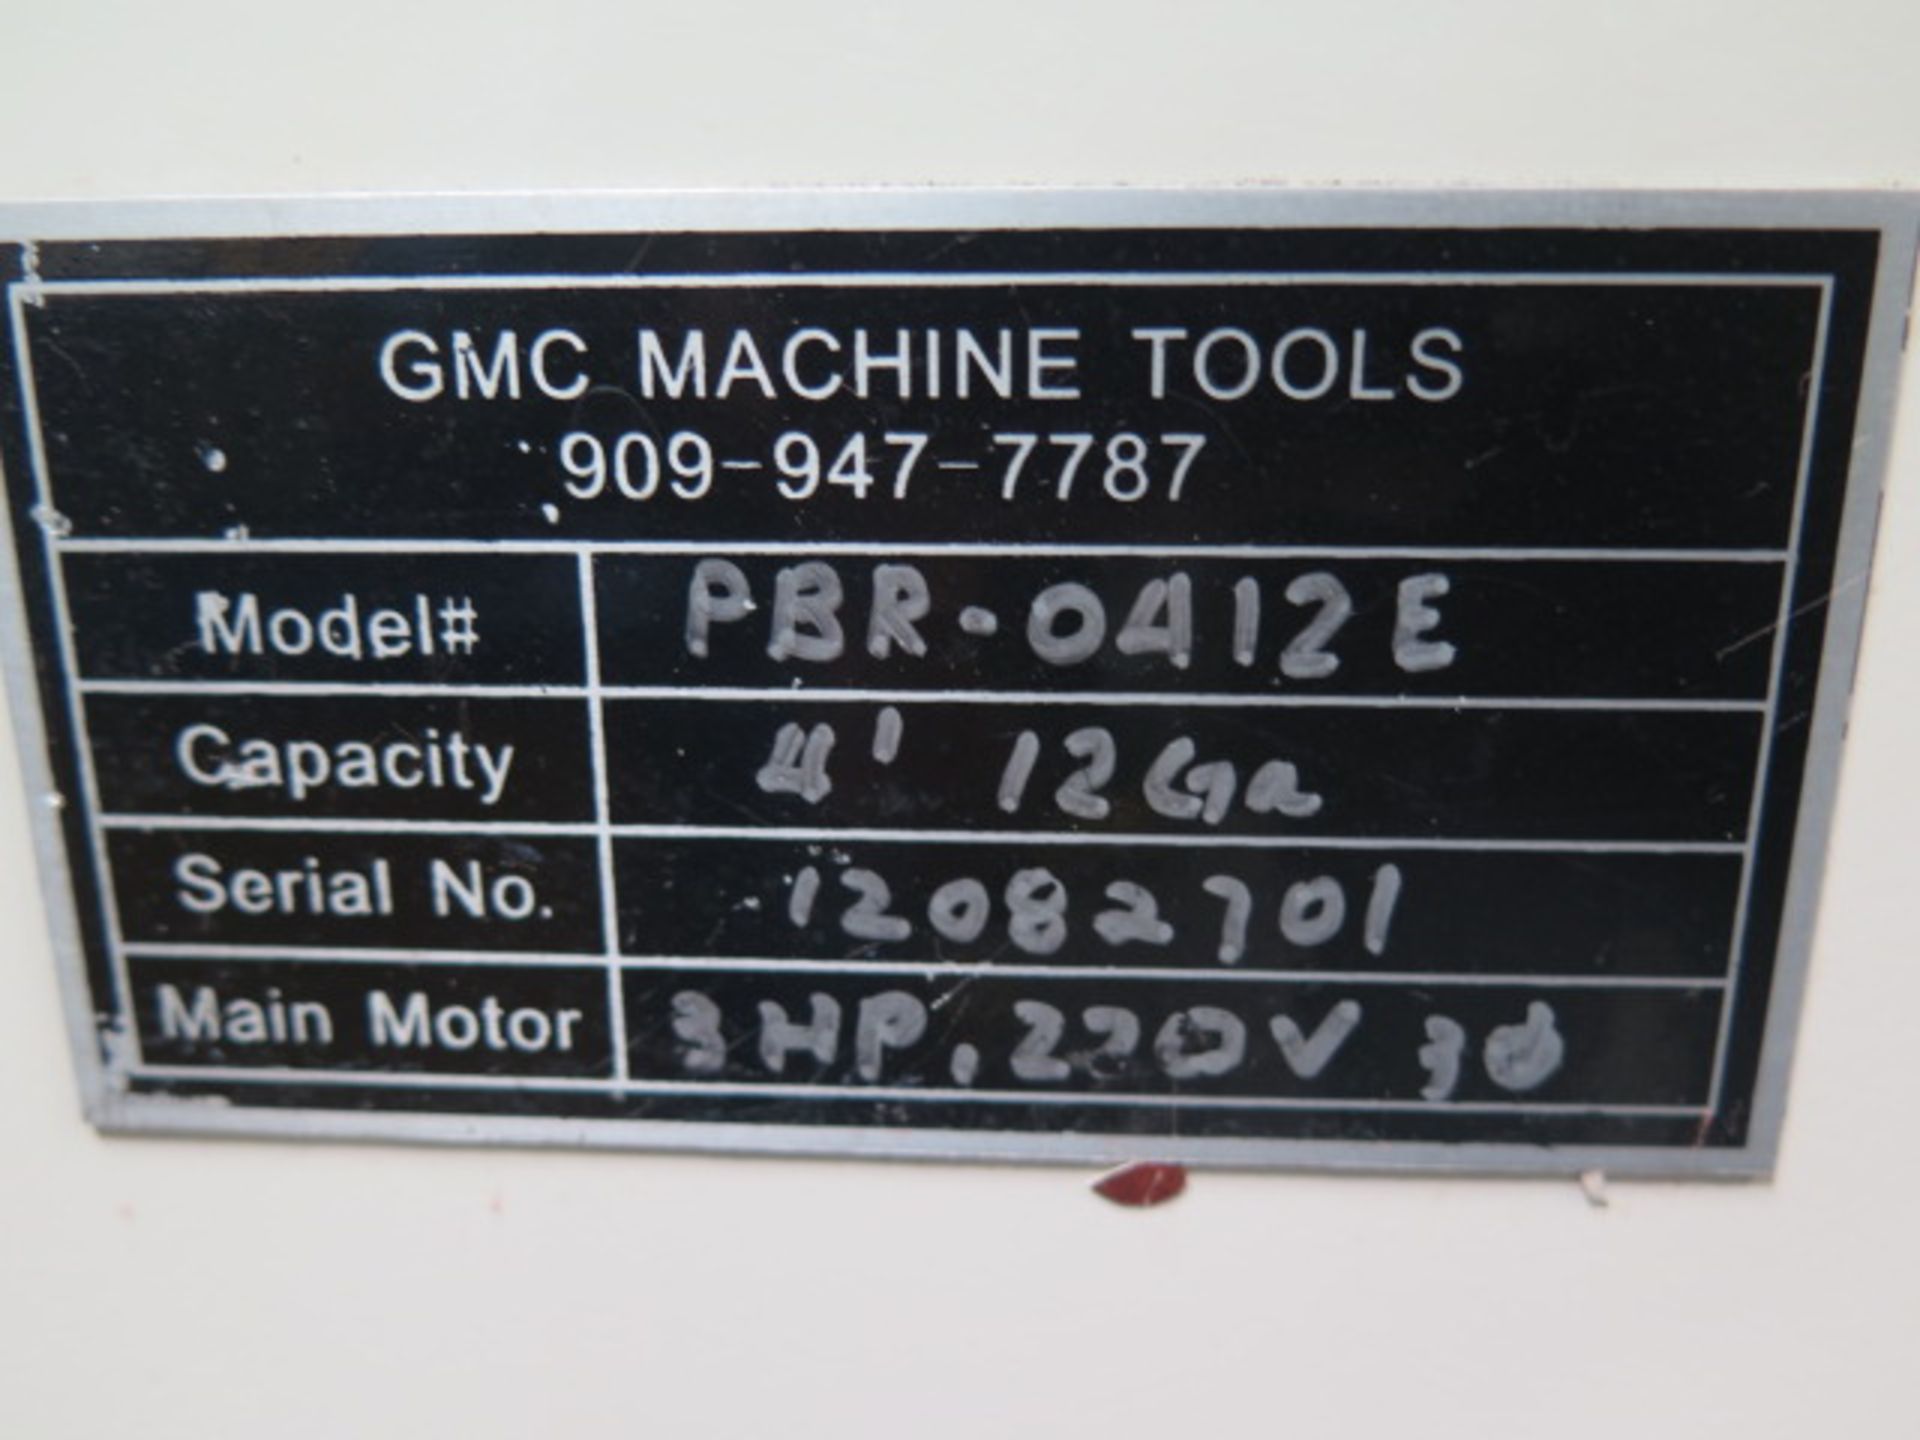 GMC mdl. PBR-0412E 48” x 12GA Power Roll s/n 12082701 w/ 3 ½” Rolls - Bild 6 aus 6